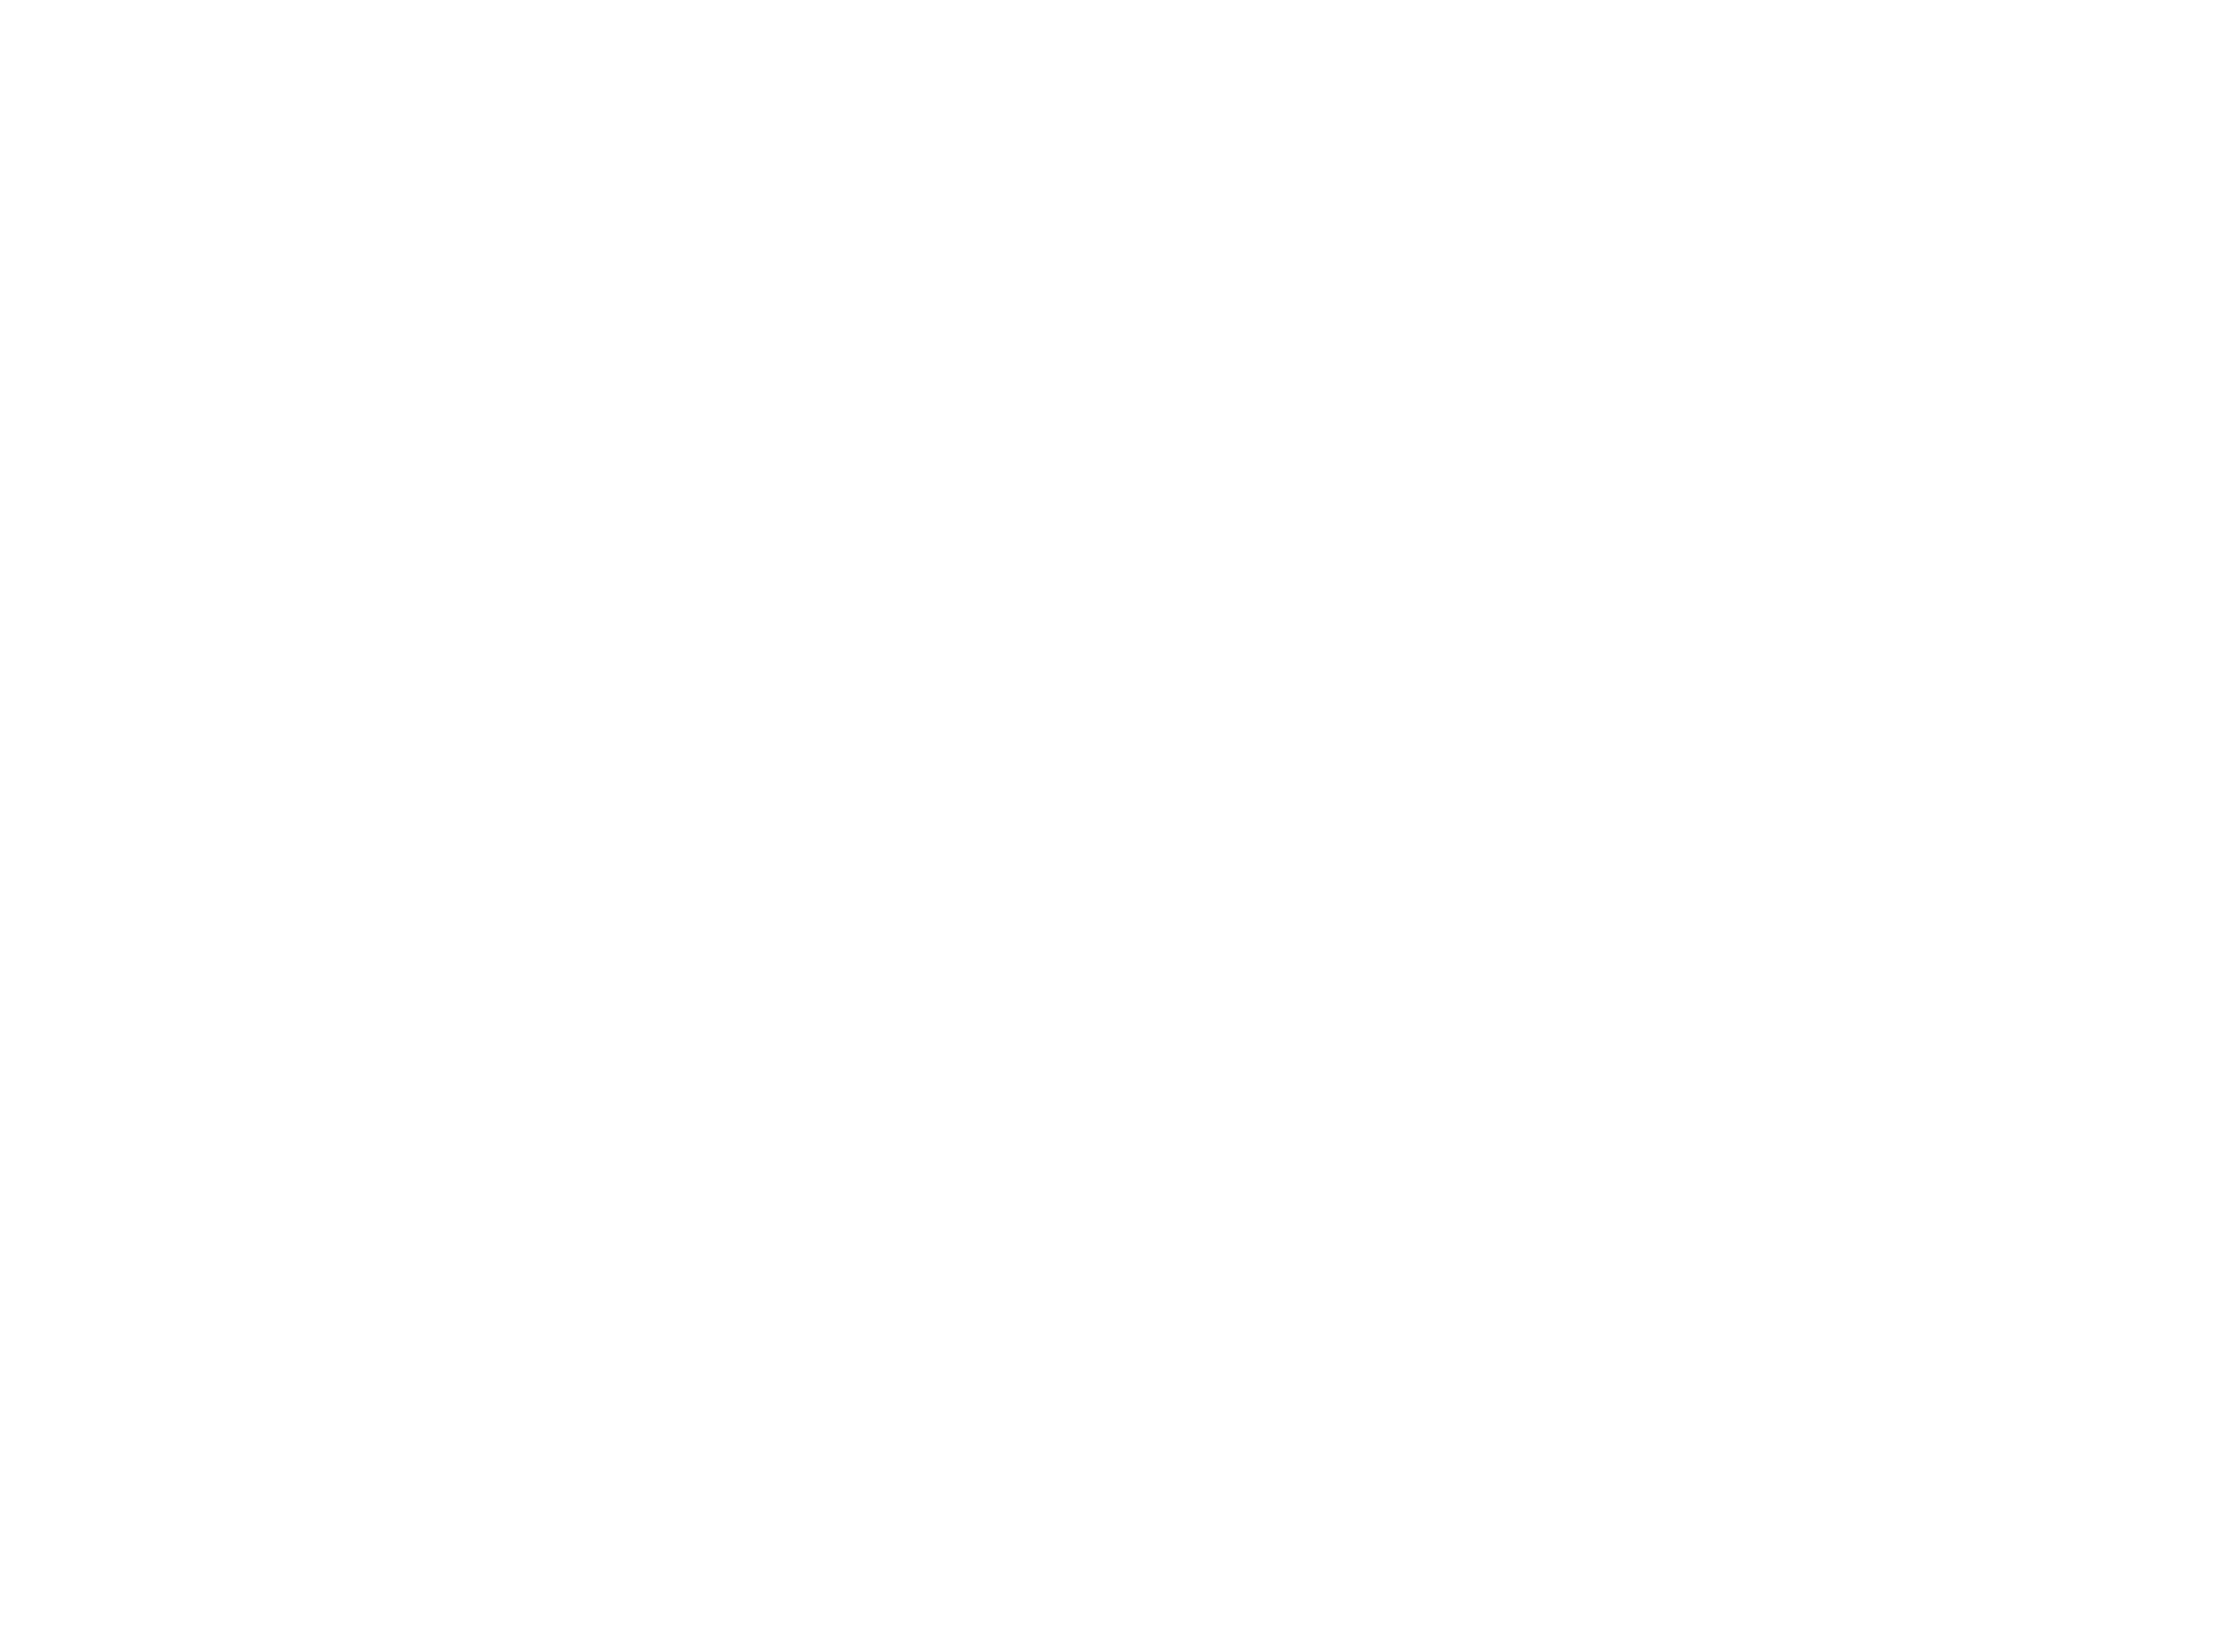 Grand Depok City Official Website